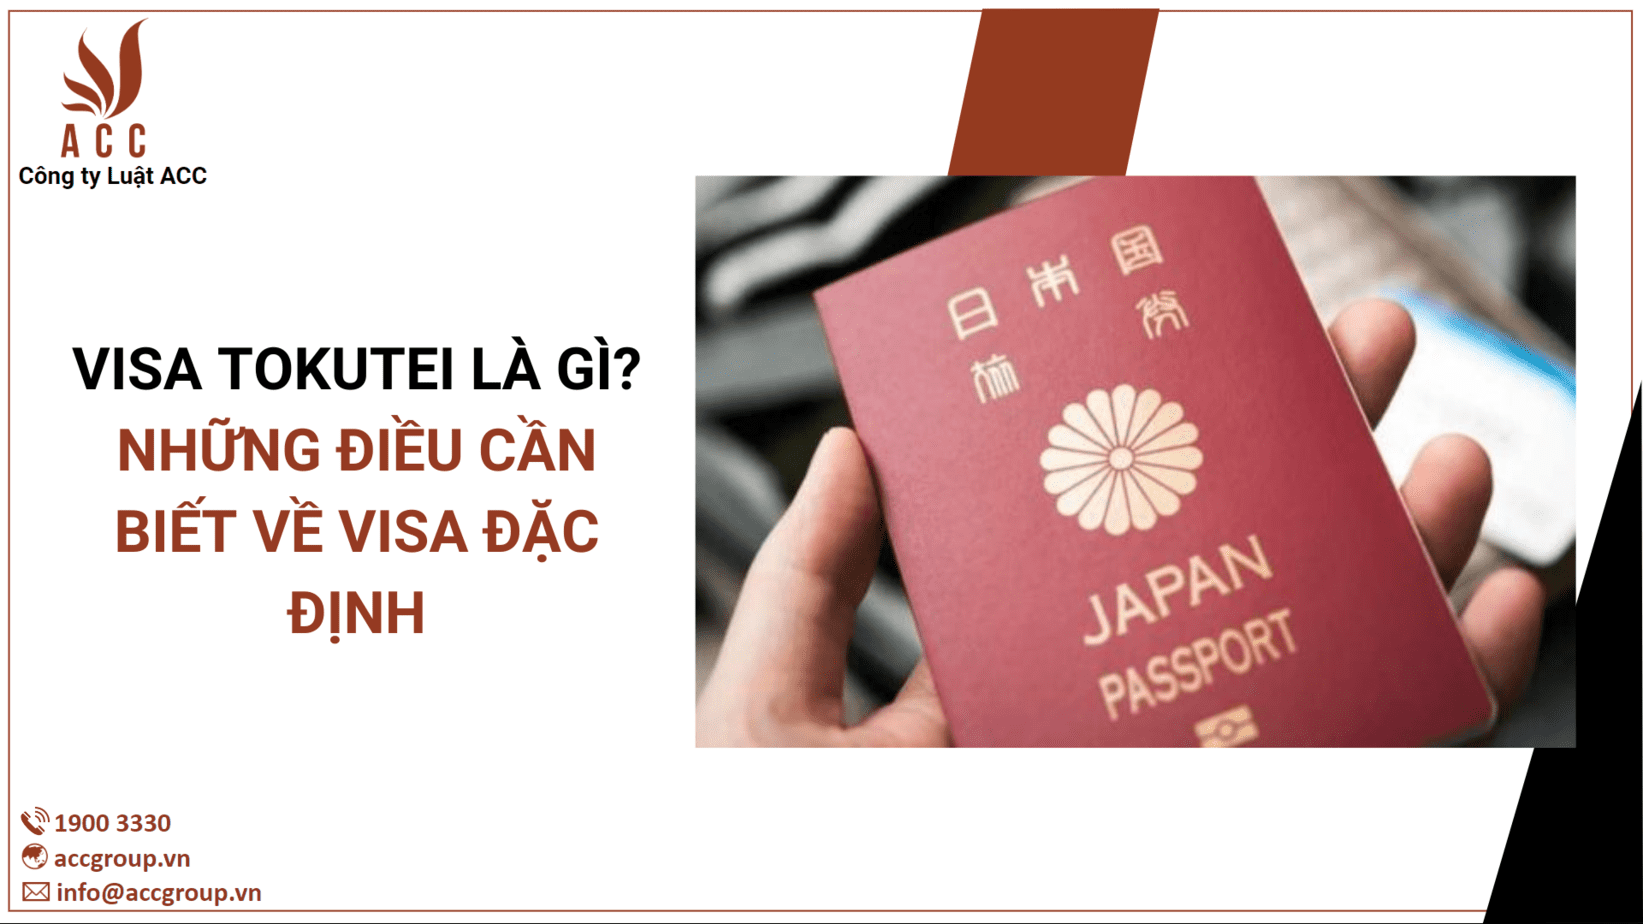 Visa Tokutei là gì? Những điều cần biết về visa đặc định